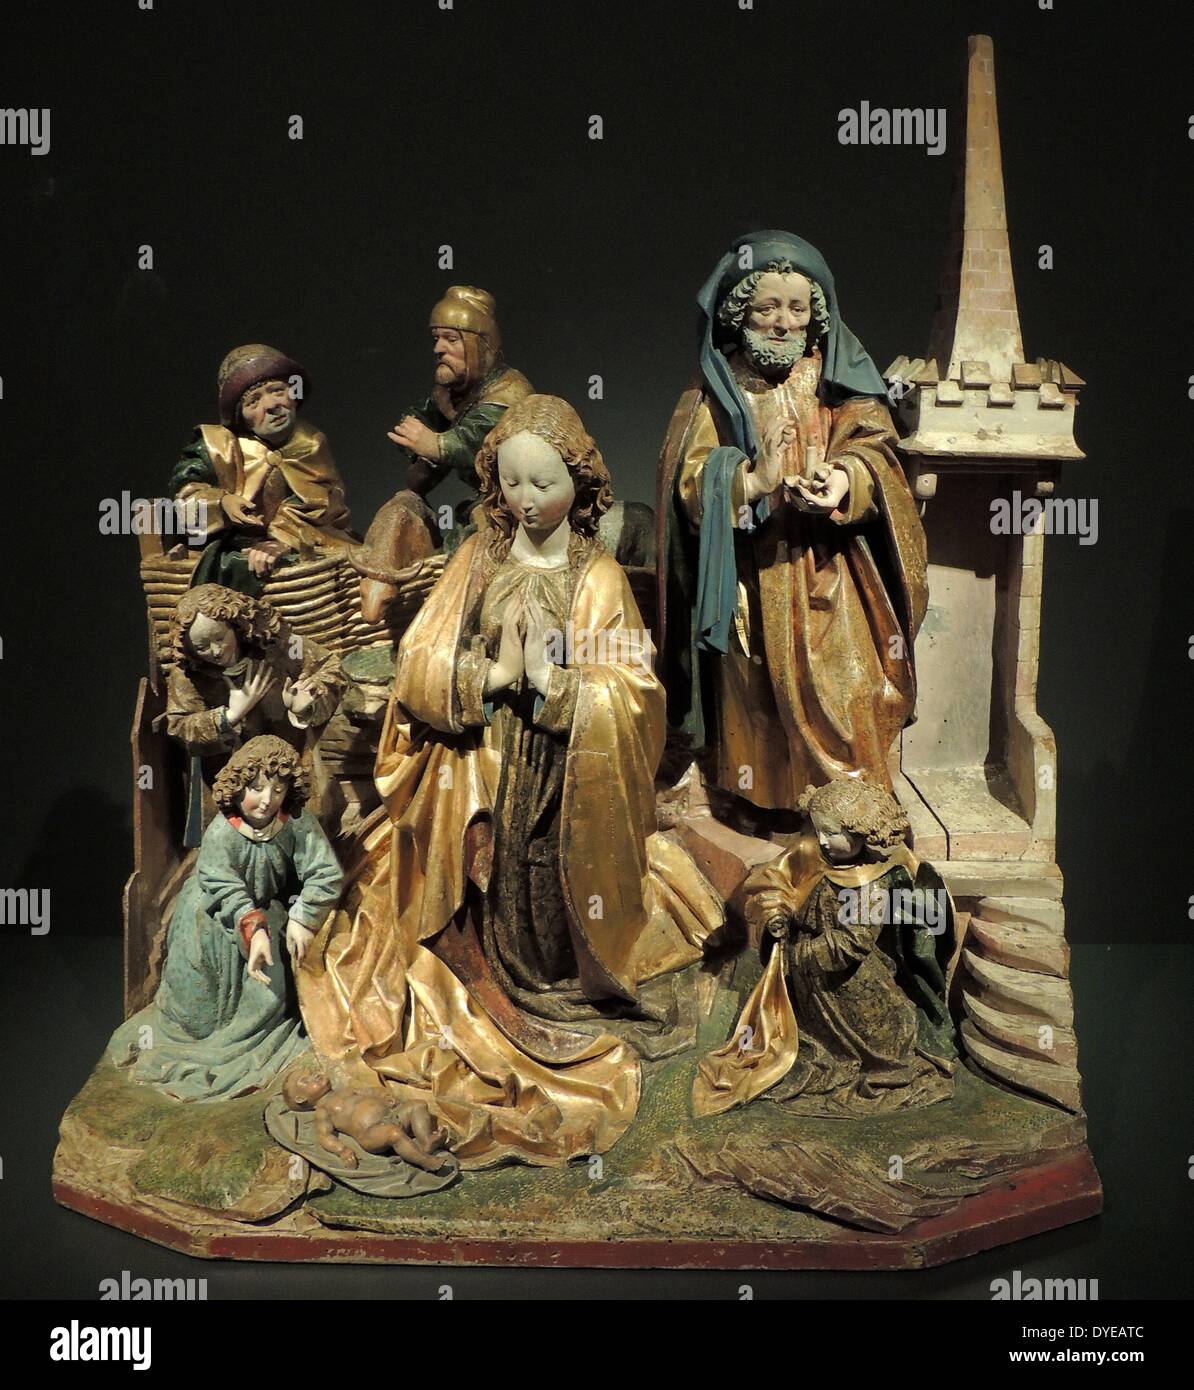 Le Christ dans la maison de Marie et Marthe. La dernière Cène. La Cène à Emmaüs. Ulm, c.1520. Avec de vieux bois polychromie. Ces trois groupes représentent des scènes de la vie du Christ dans lequel il apparaît lors d'un repas table. Ils ont à l'origine faisait partie de la prédelle (zone inférieure) d'un grand autel sculpté. Les trois scènes de table se reporter à la célébration de la messe, quand le pain et le vin sont présentés à l'autel comme le corps et le sang du Christ. Banque D'Images